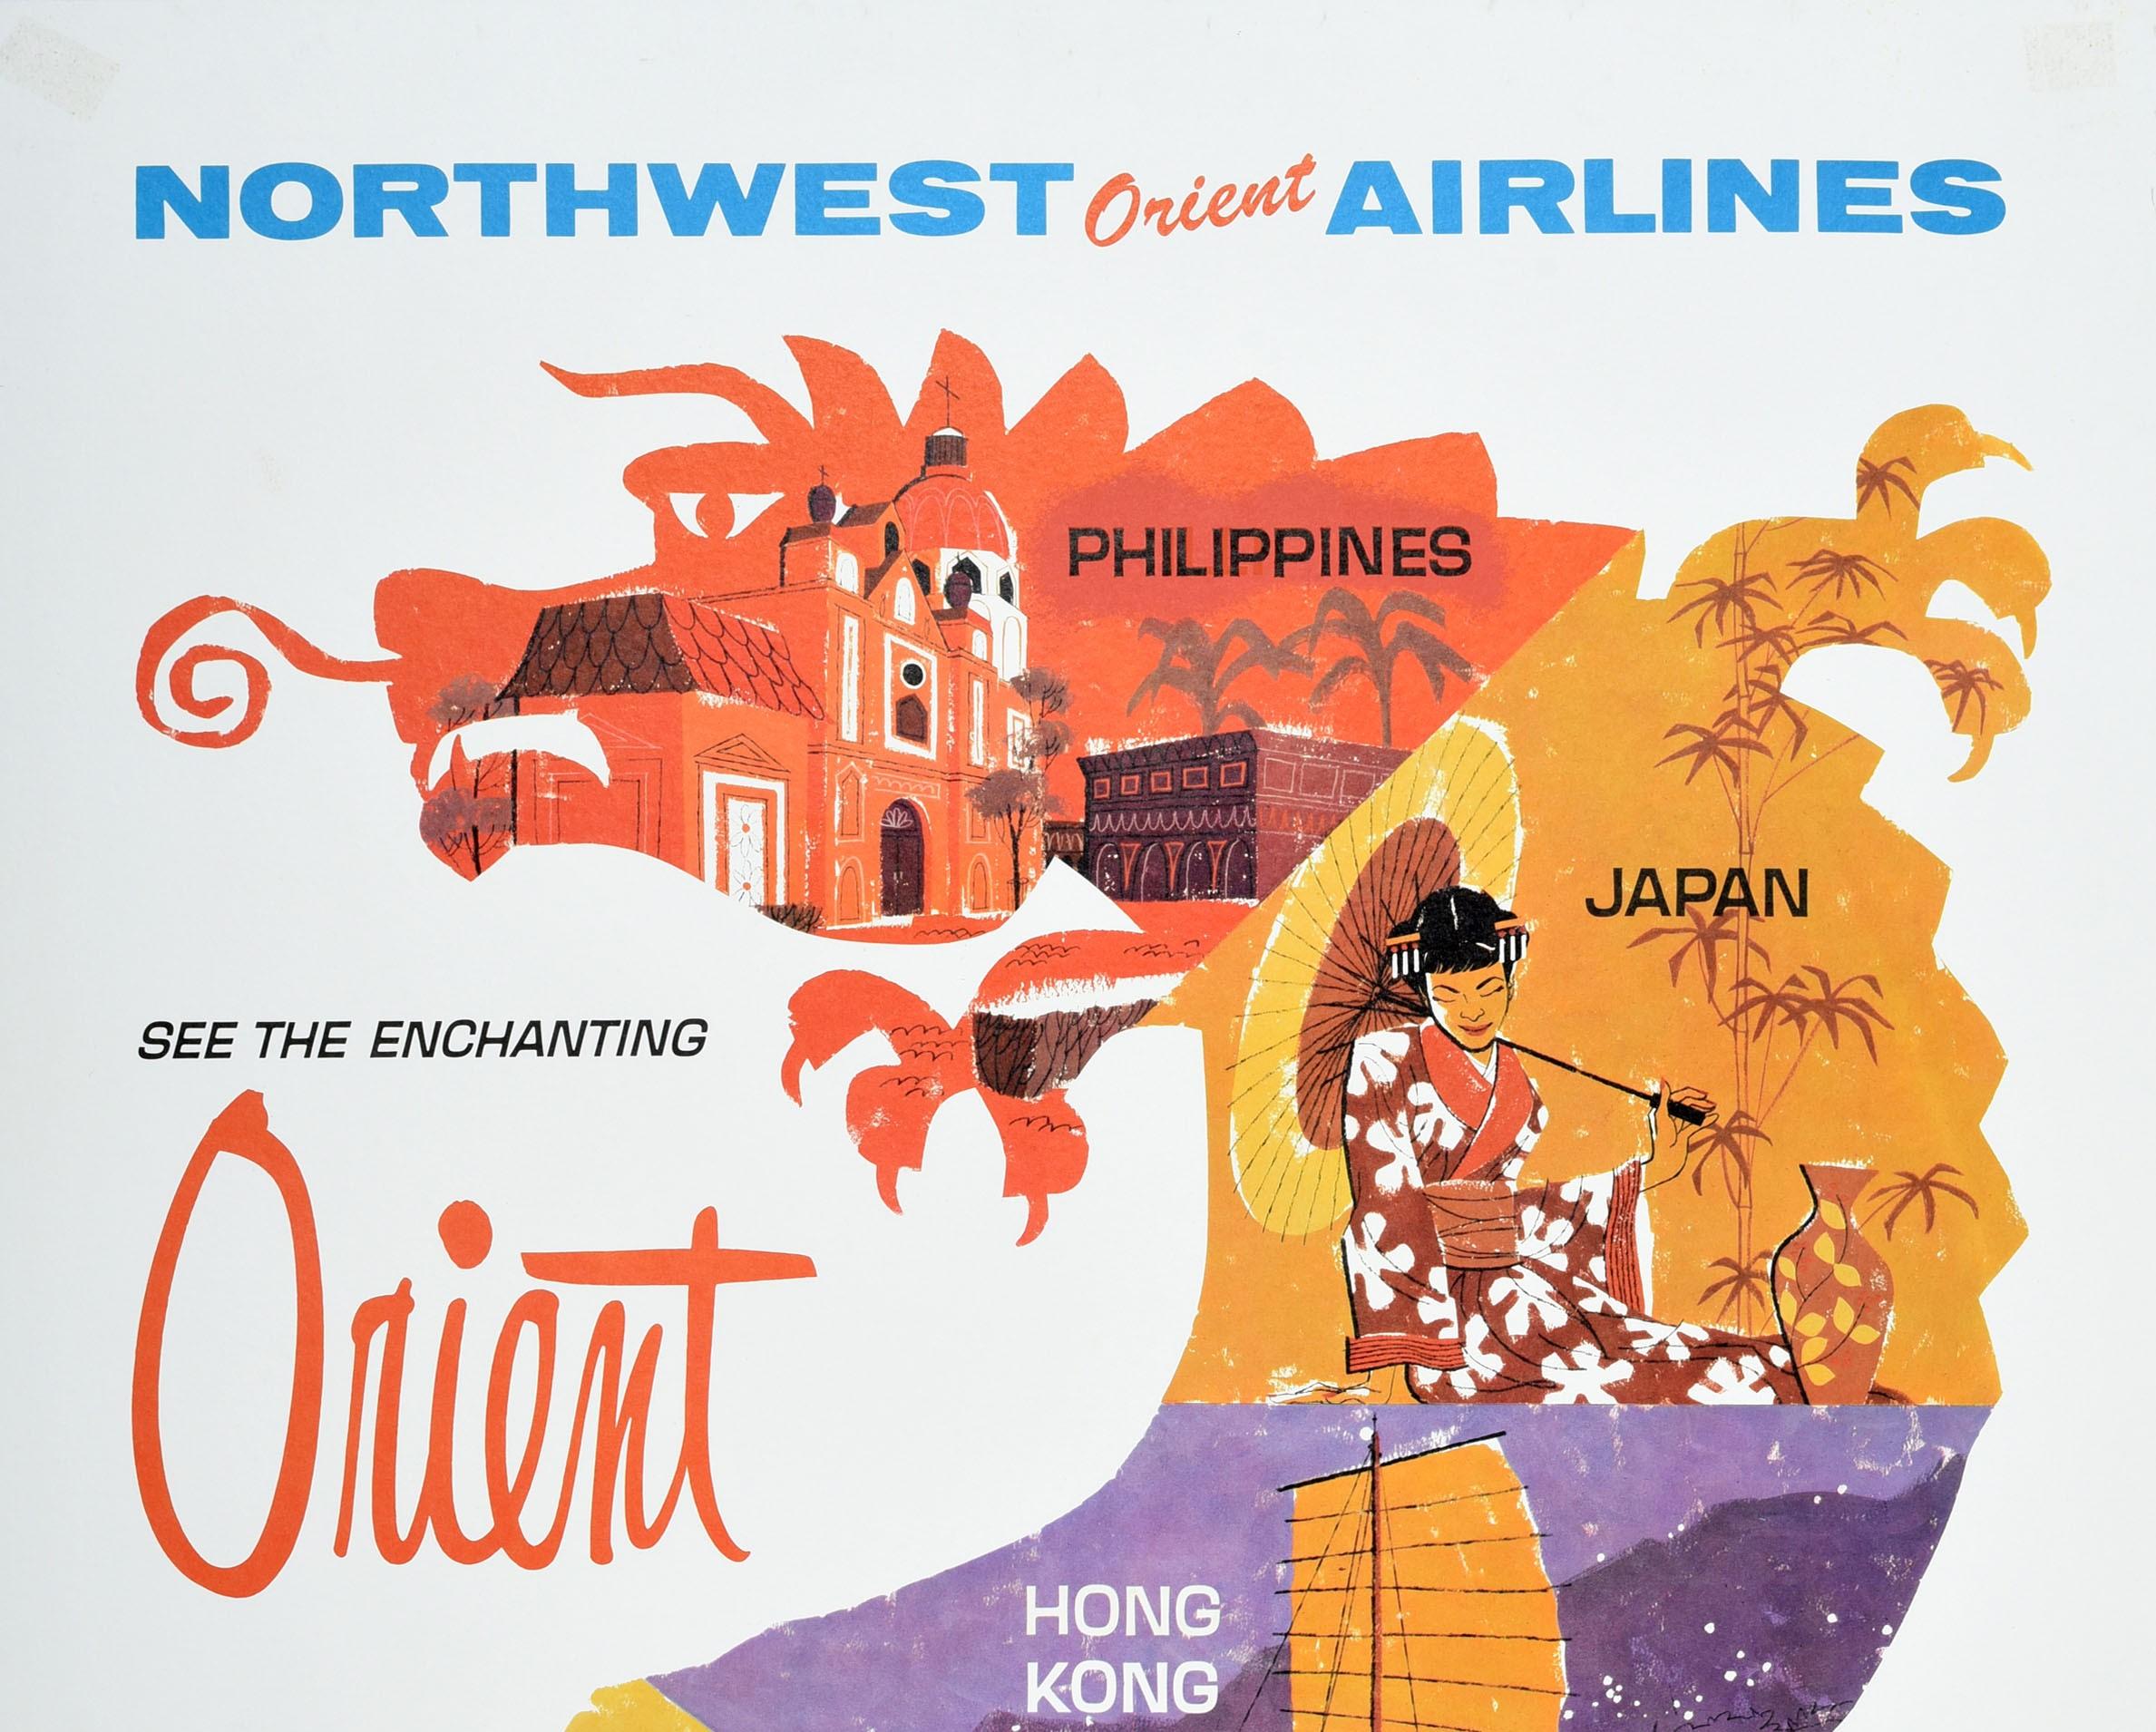 Affiche publicitaire originale pour Northwest Orient Airlines See The Enchanting Orient Philippines Japan Hong Kong Korea Taiwan DC8C-Jet Service Shortest, Fastest, Finest Way To The Orient. Motif coloré représentant cinq images des différents pays